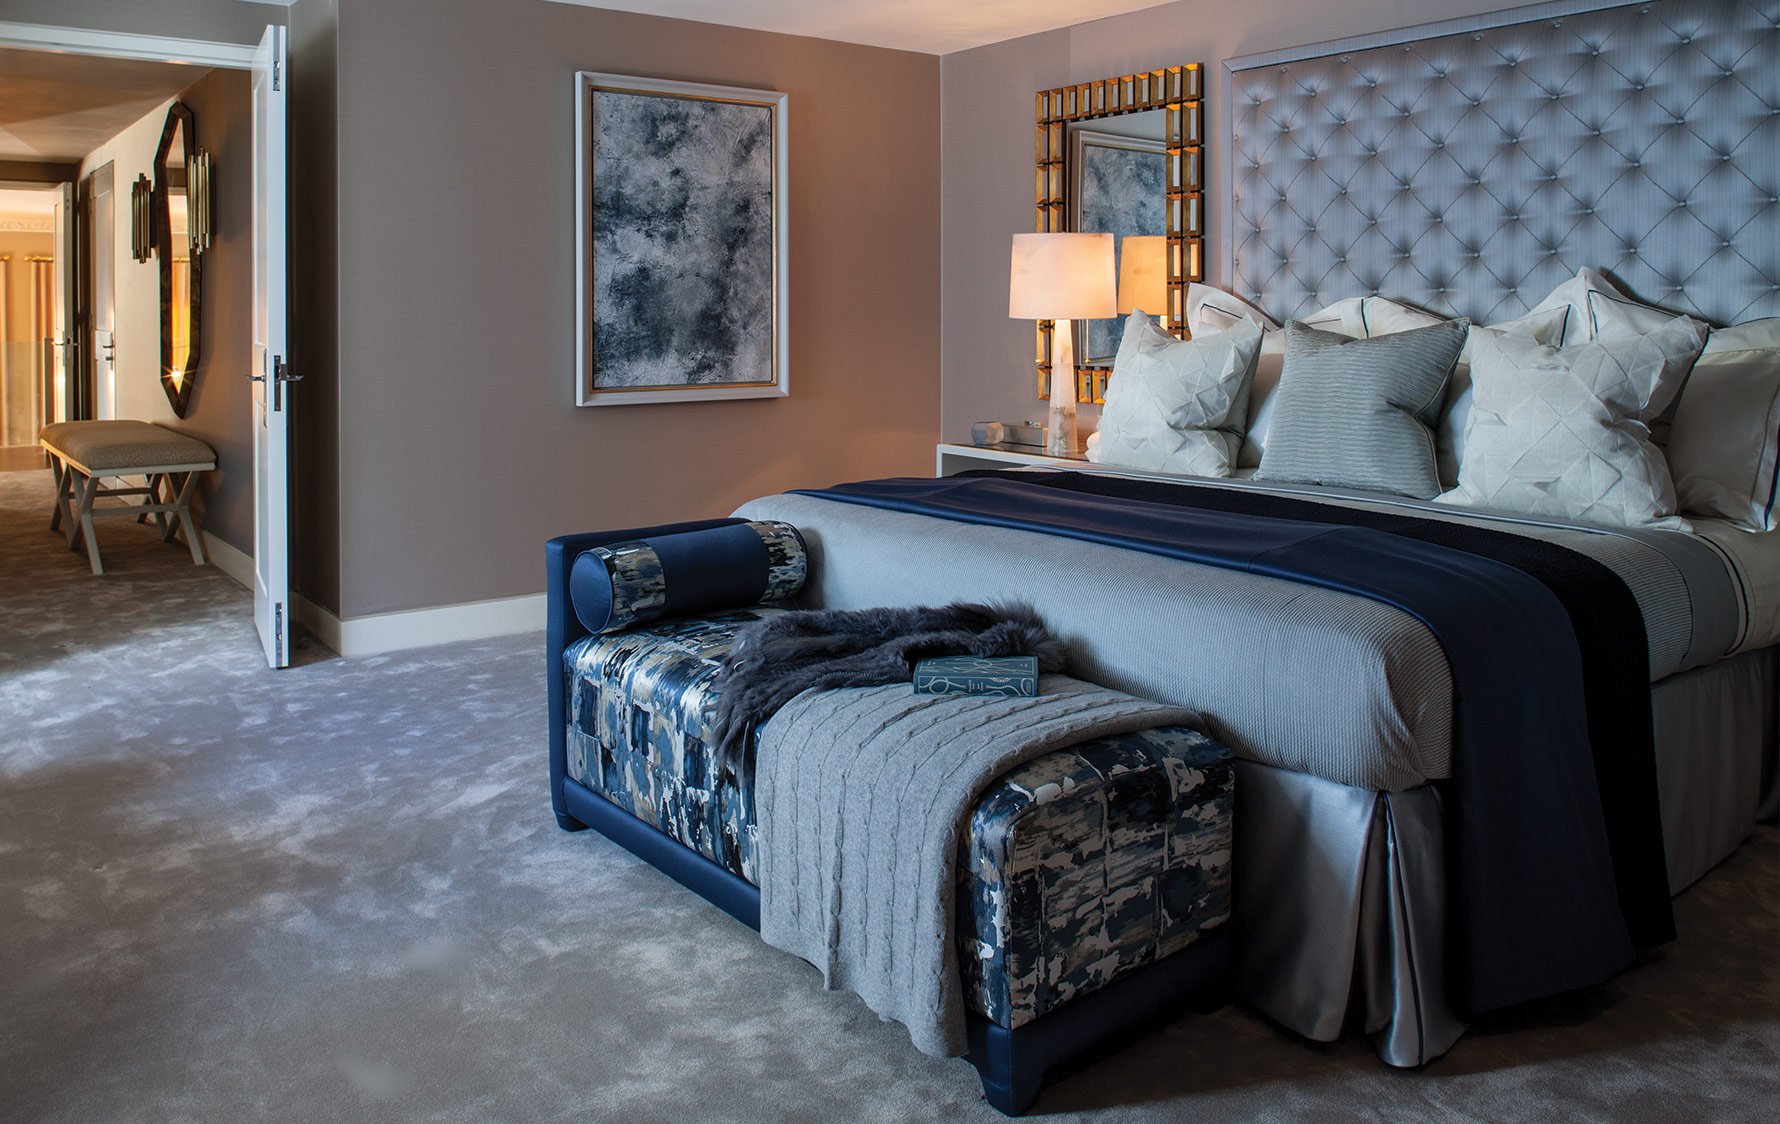 Colores del dormitorio - azul y gris